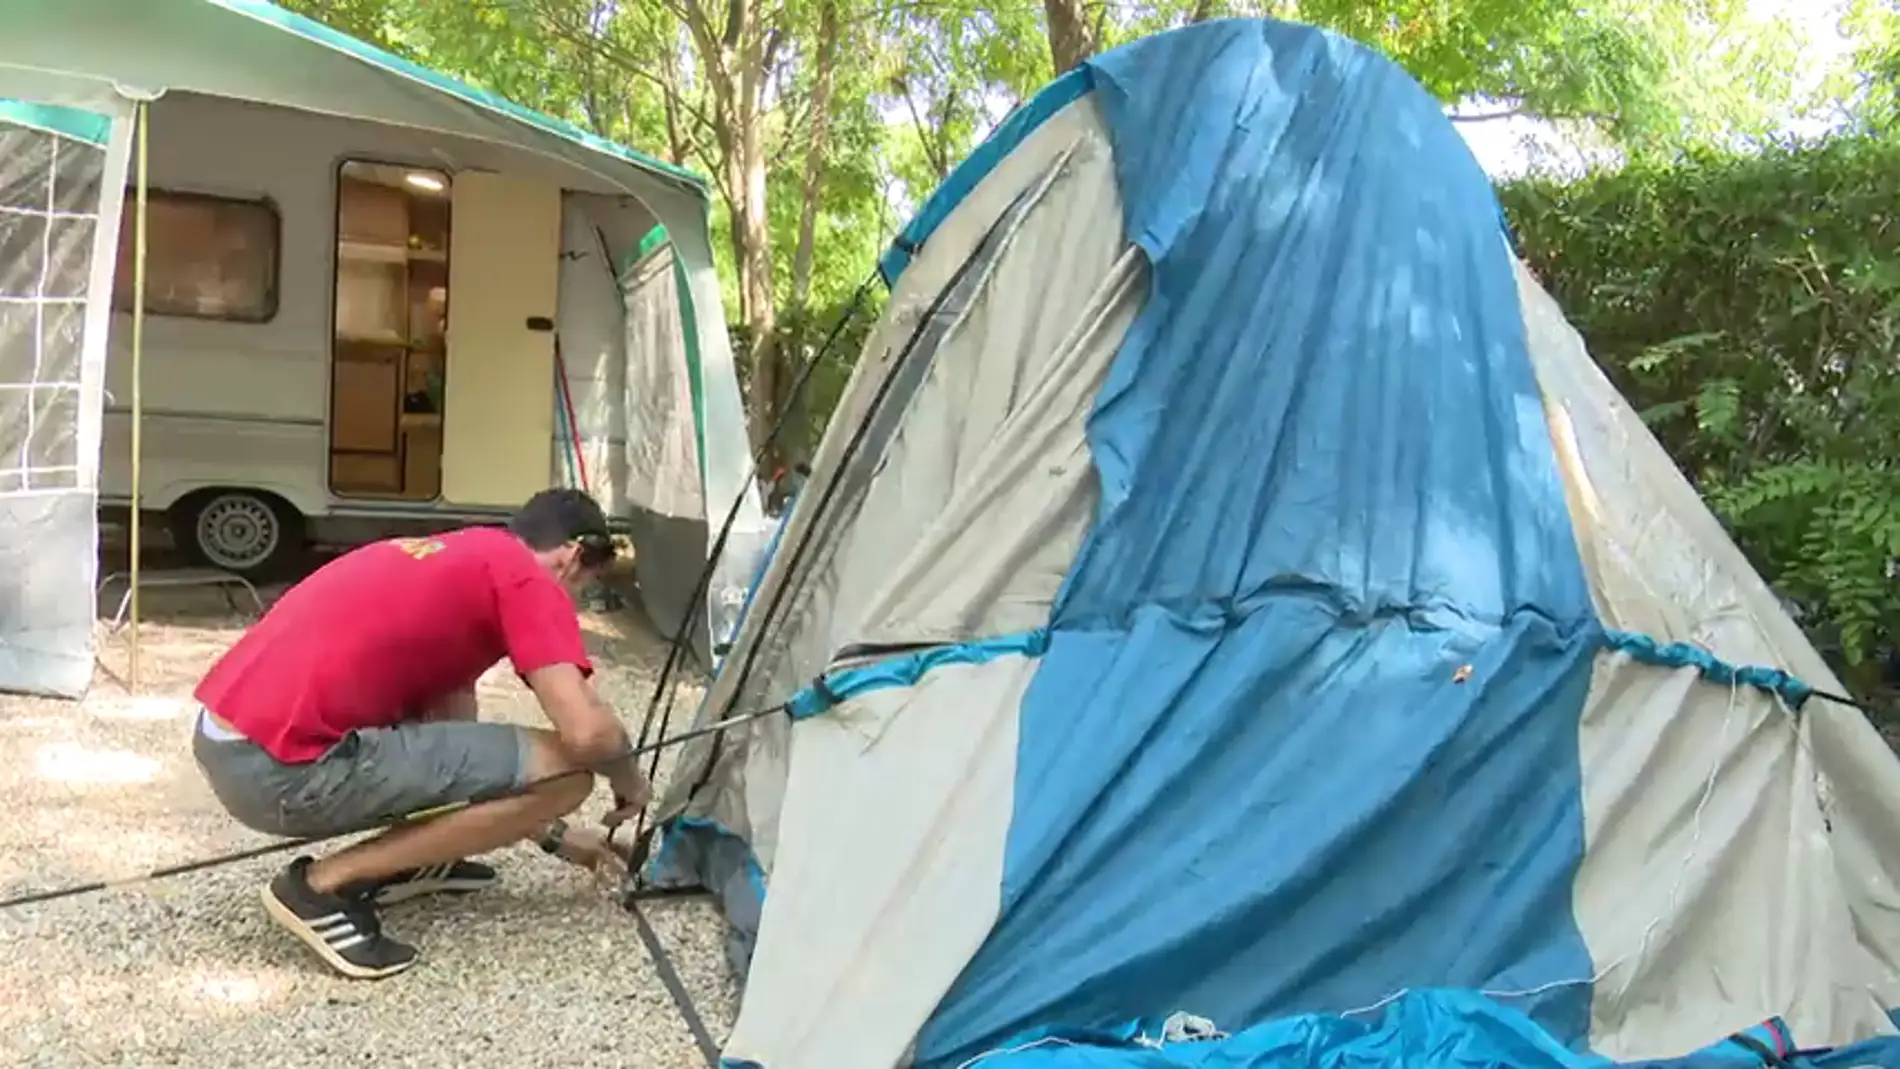 Los nuevos bungalows de campings son una de las opciones preferidas para veranear